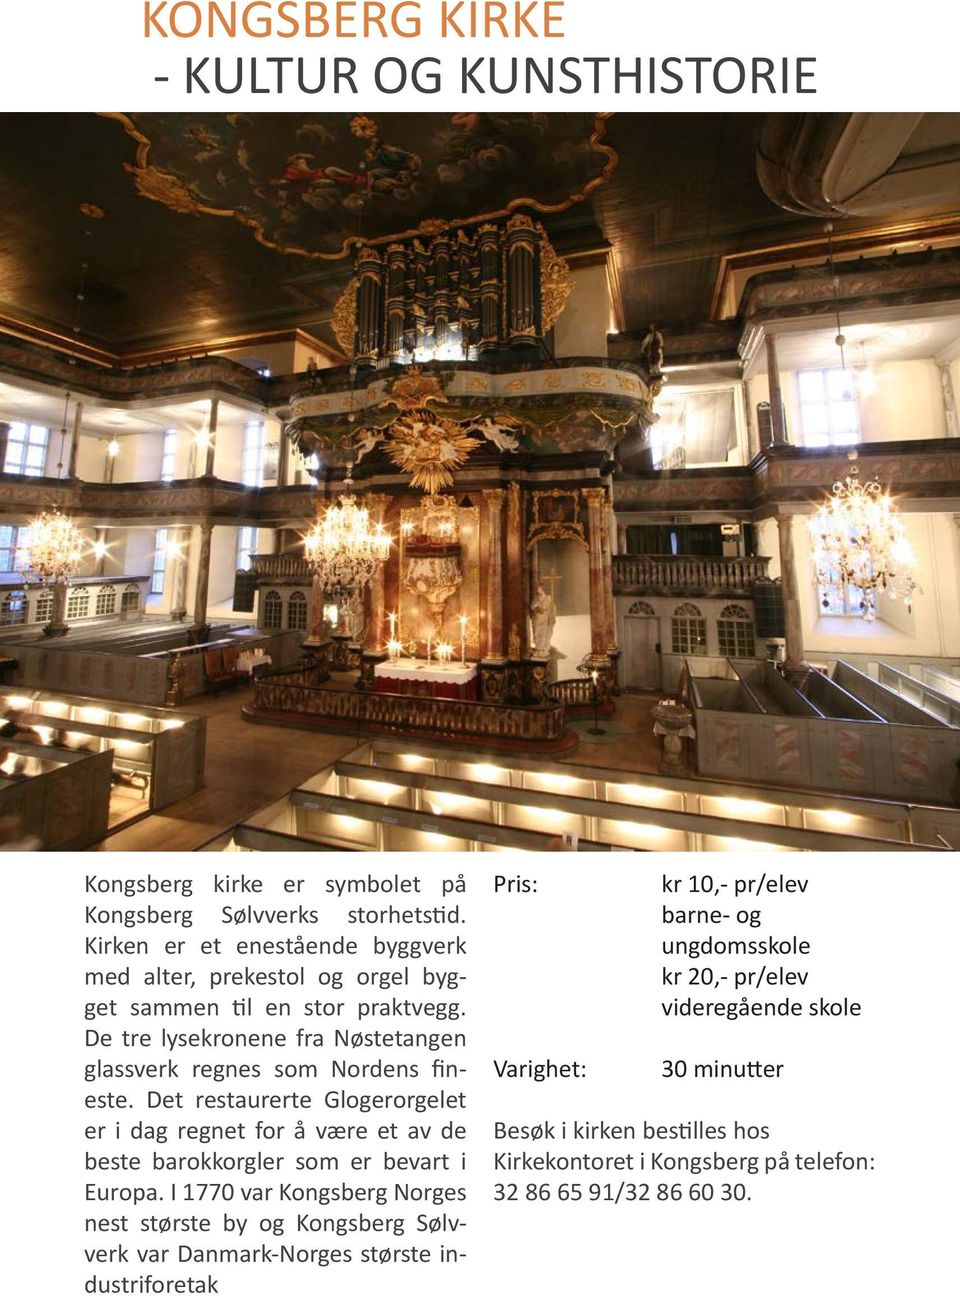 Det restaurerte Glogerorgelet er i dag regnet for å være et av de beste barokkorgler som er bevart i Europa.